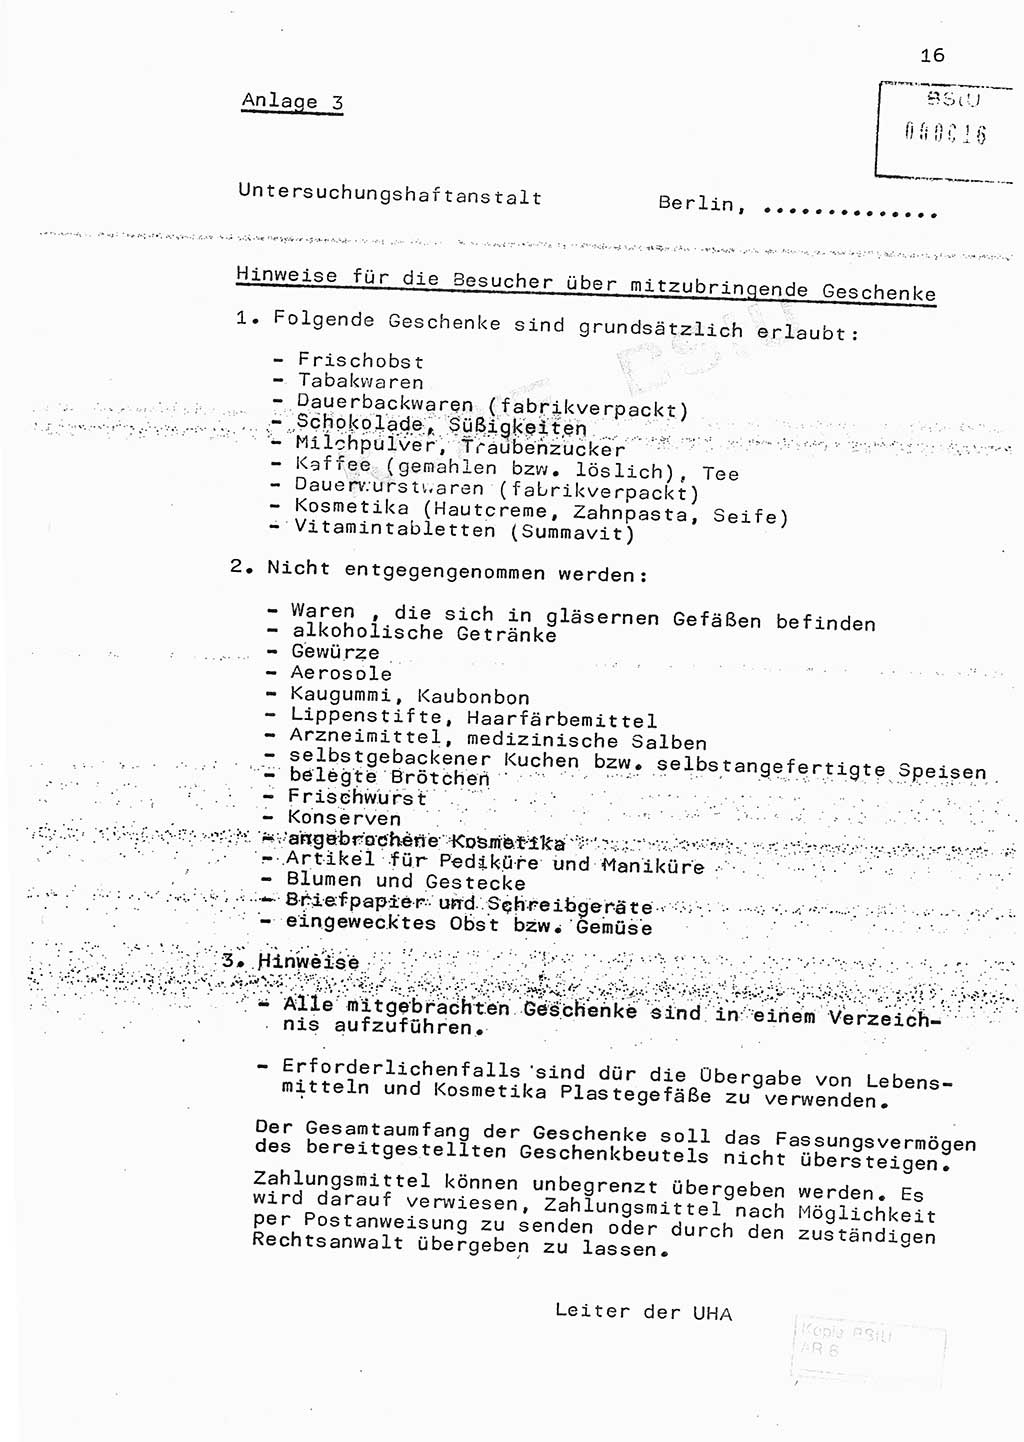 Fachschulabschlußarbeit Hauptmann Edwin Buhse (Abt. ⅩⅣ), Ministerium für Staatssicherheit (MfS) [Deutsche Demokratische Republik (DDR)], Abteilung ⅩⅣ, o.D., o.O, o.J., ca. 1986 wg. Bez. DA 2/86, Seite 16 (FS-Abschl.-Arb. MfS DDR Abt. ⅩⅣ 1986, S. 16)